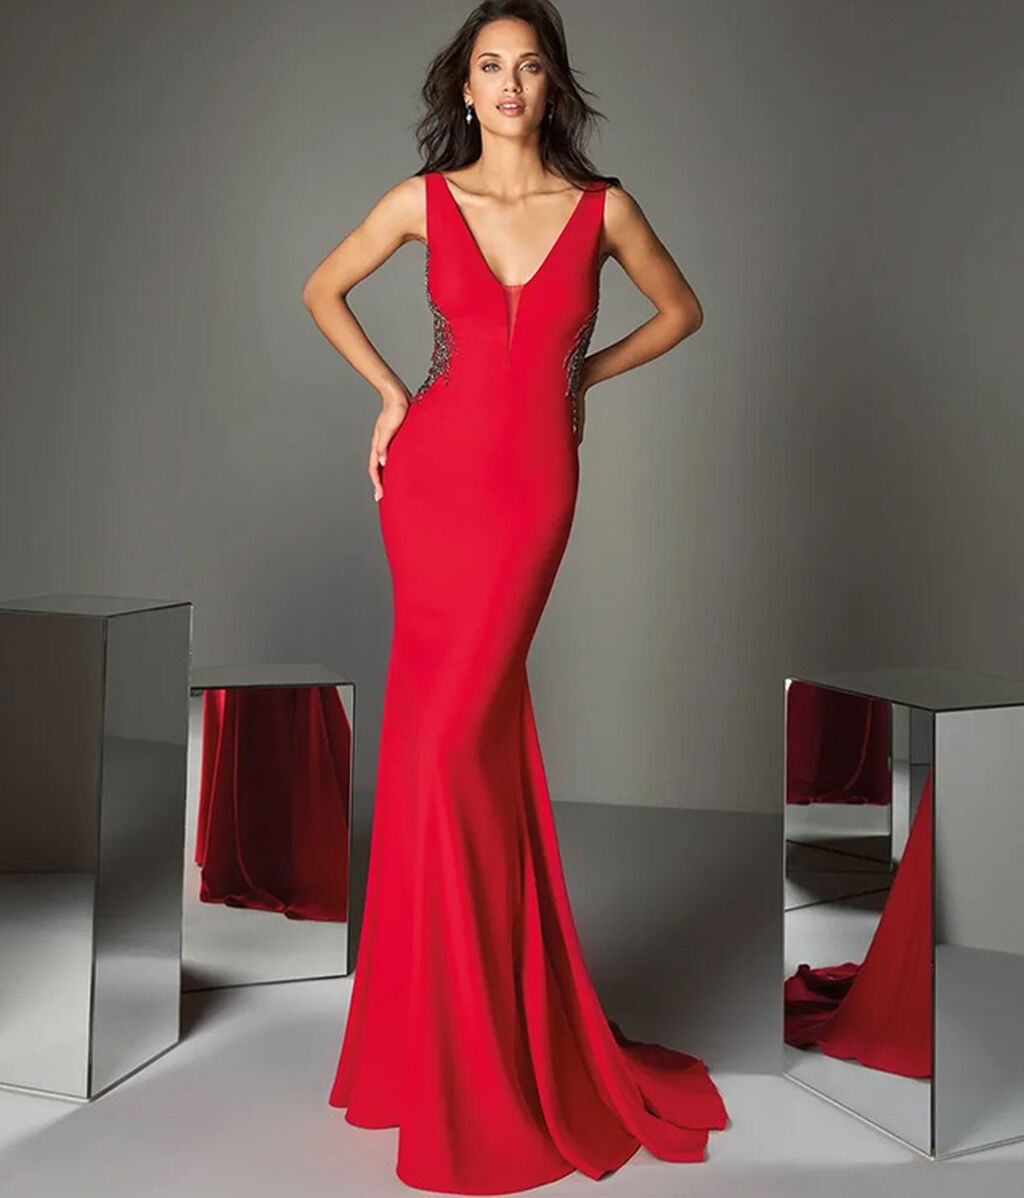 7 vestidos de novia rojos que te conquistarán - Divinity